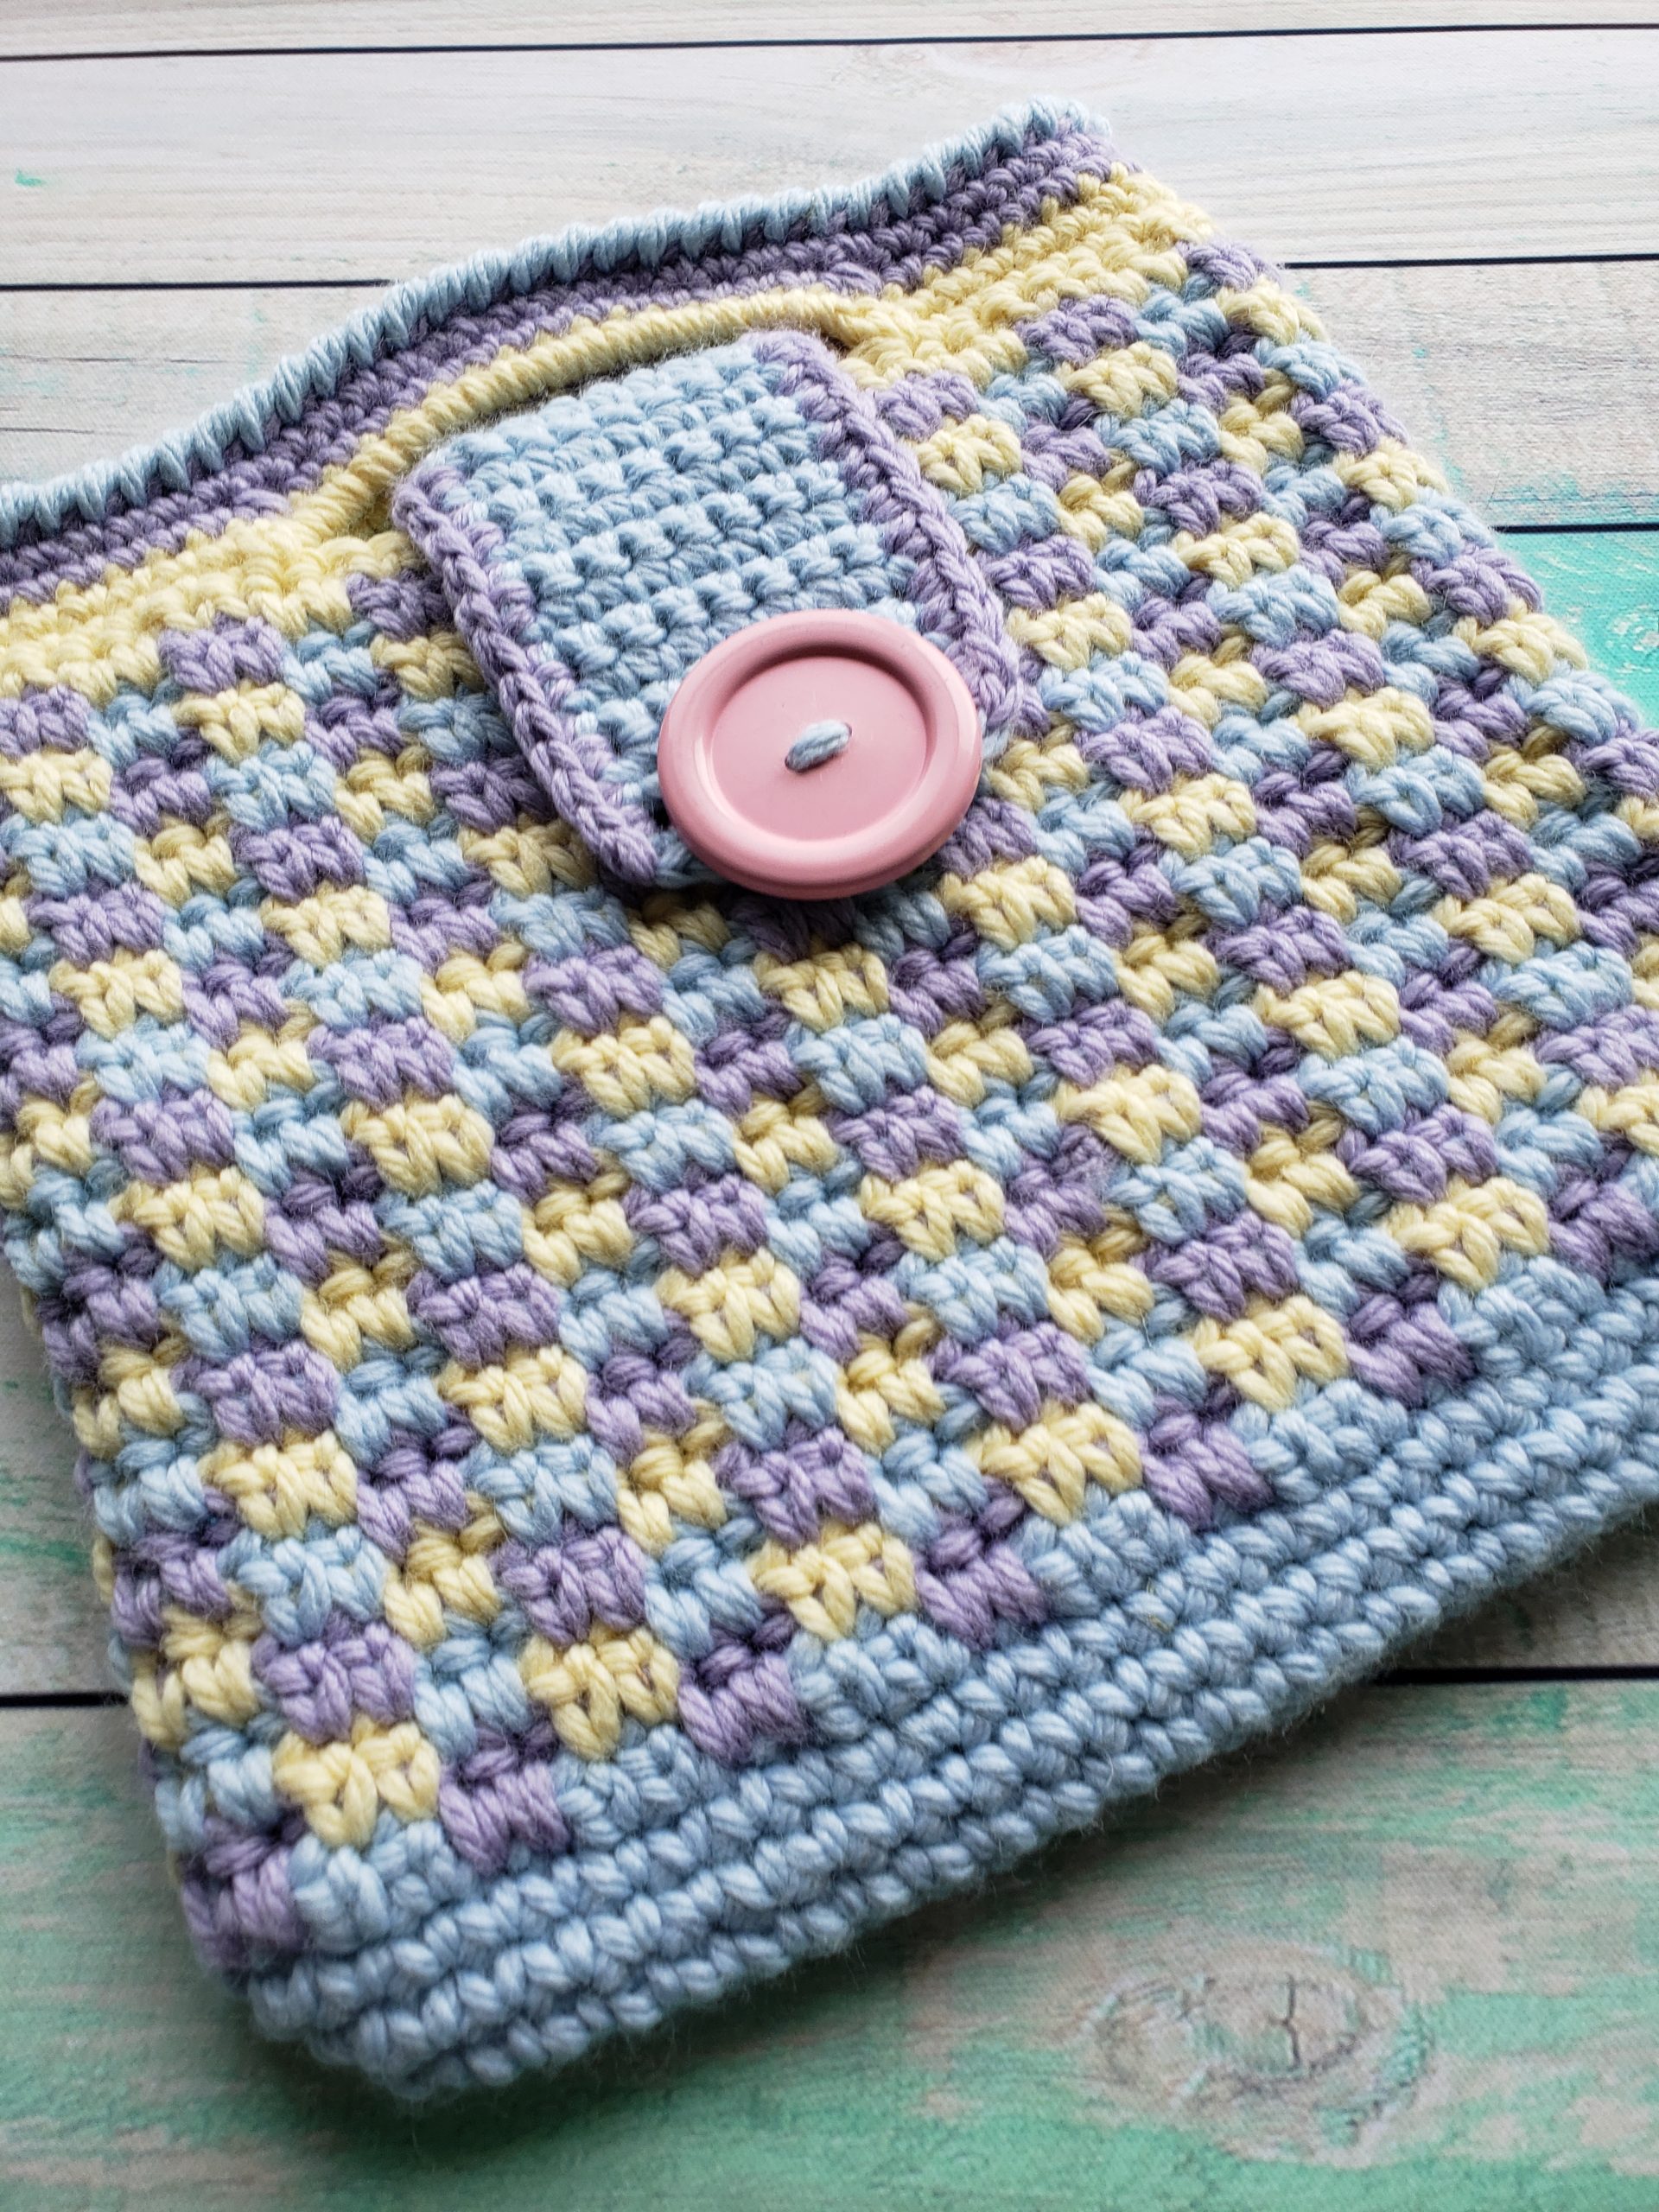 Josephine Backpack Crochet Pattern